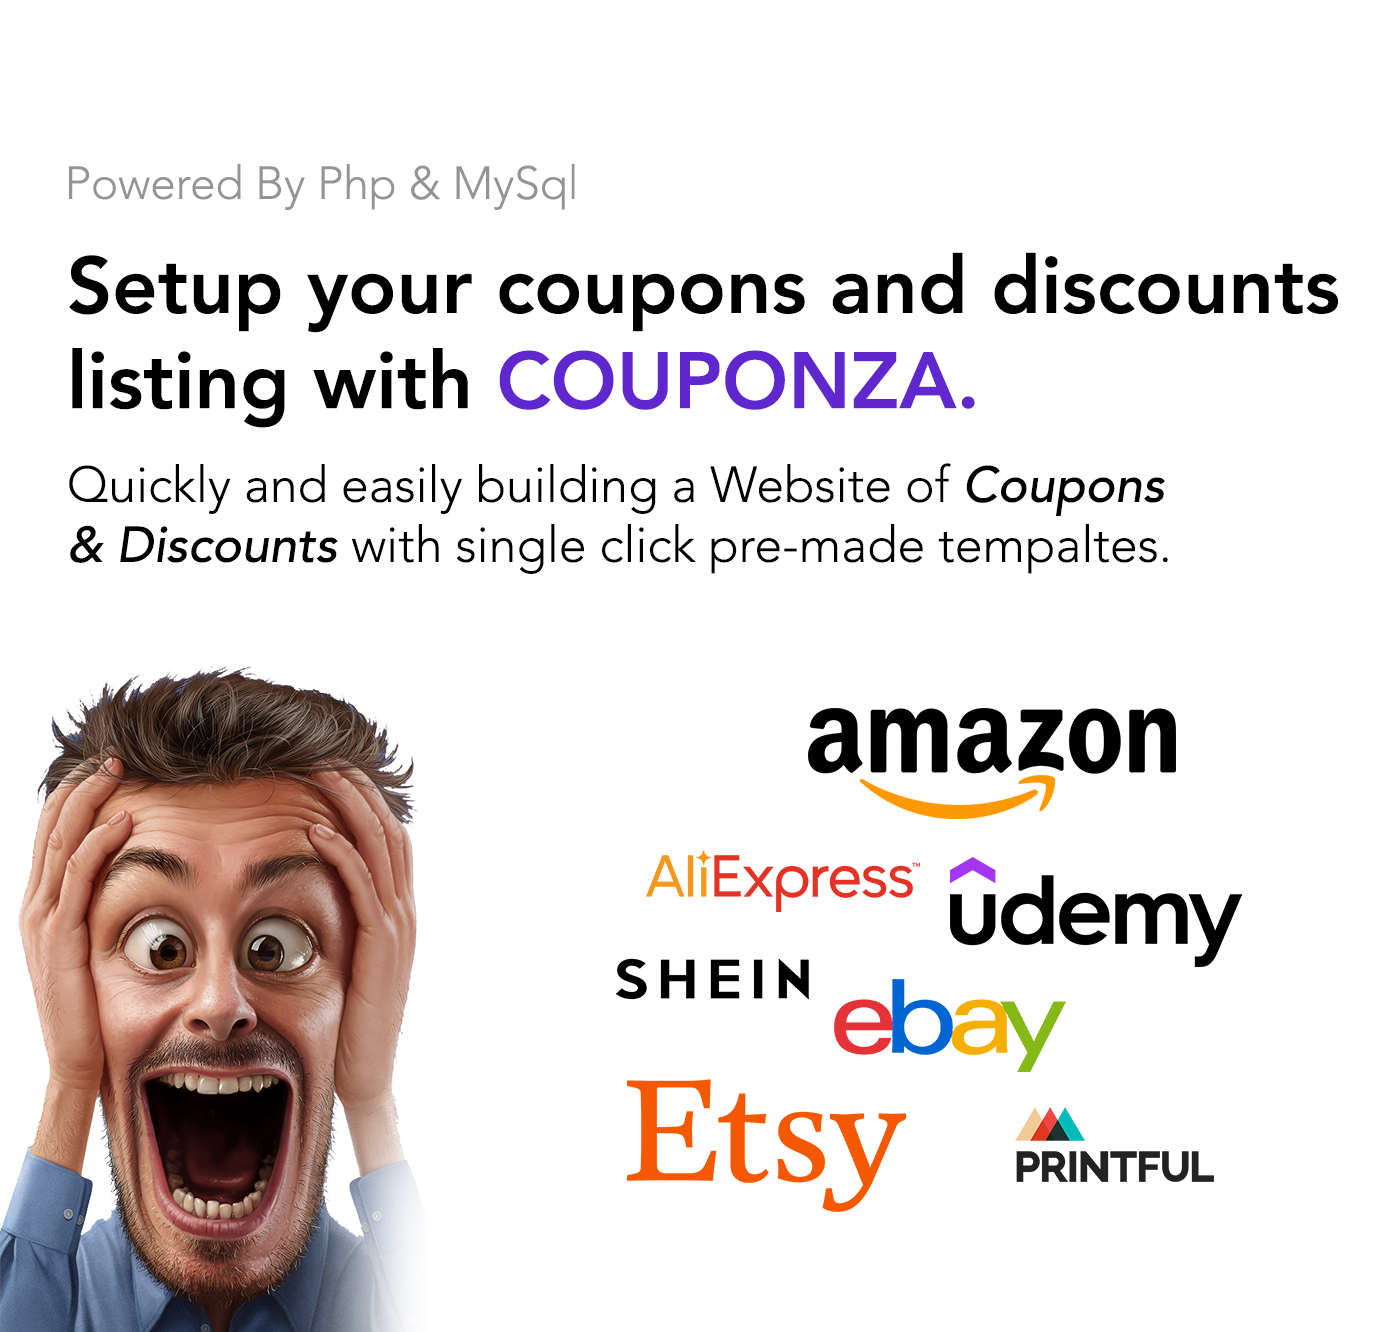 Couponza- Ultimate Coupons & Discounts Platform - 12